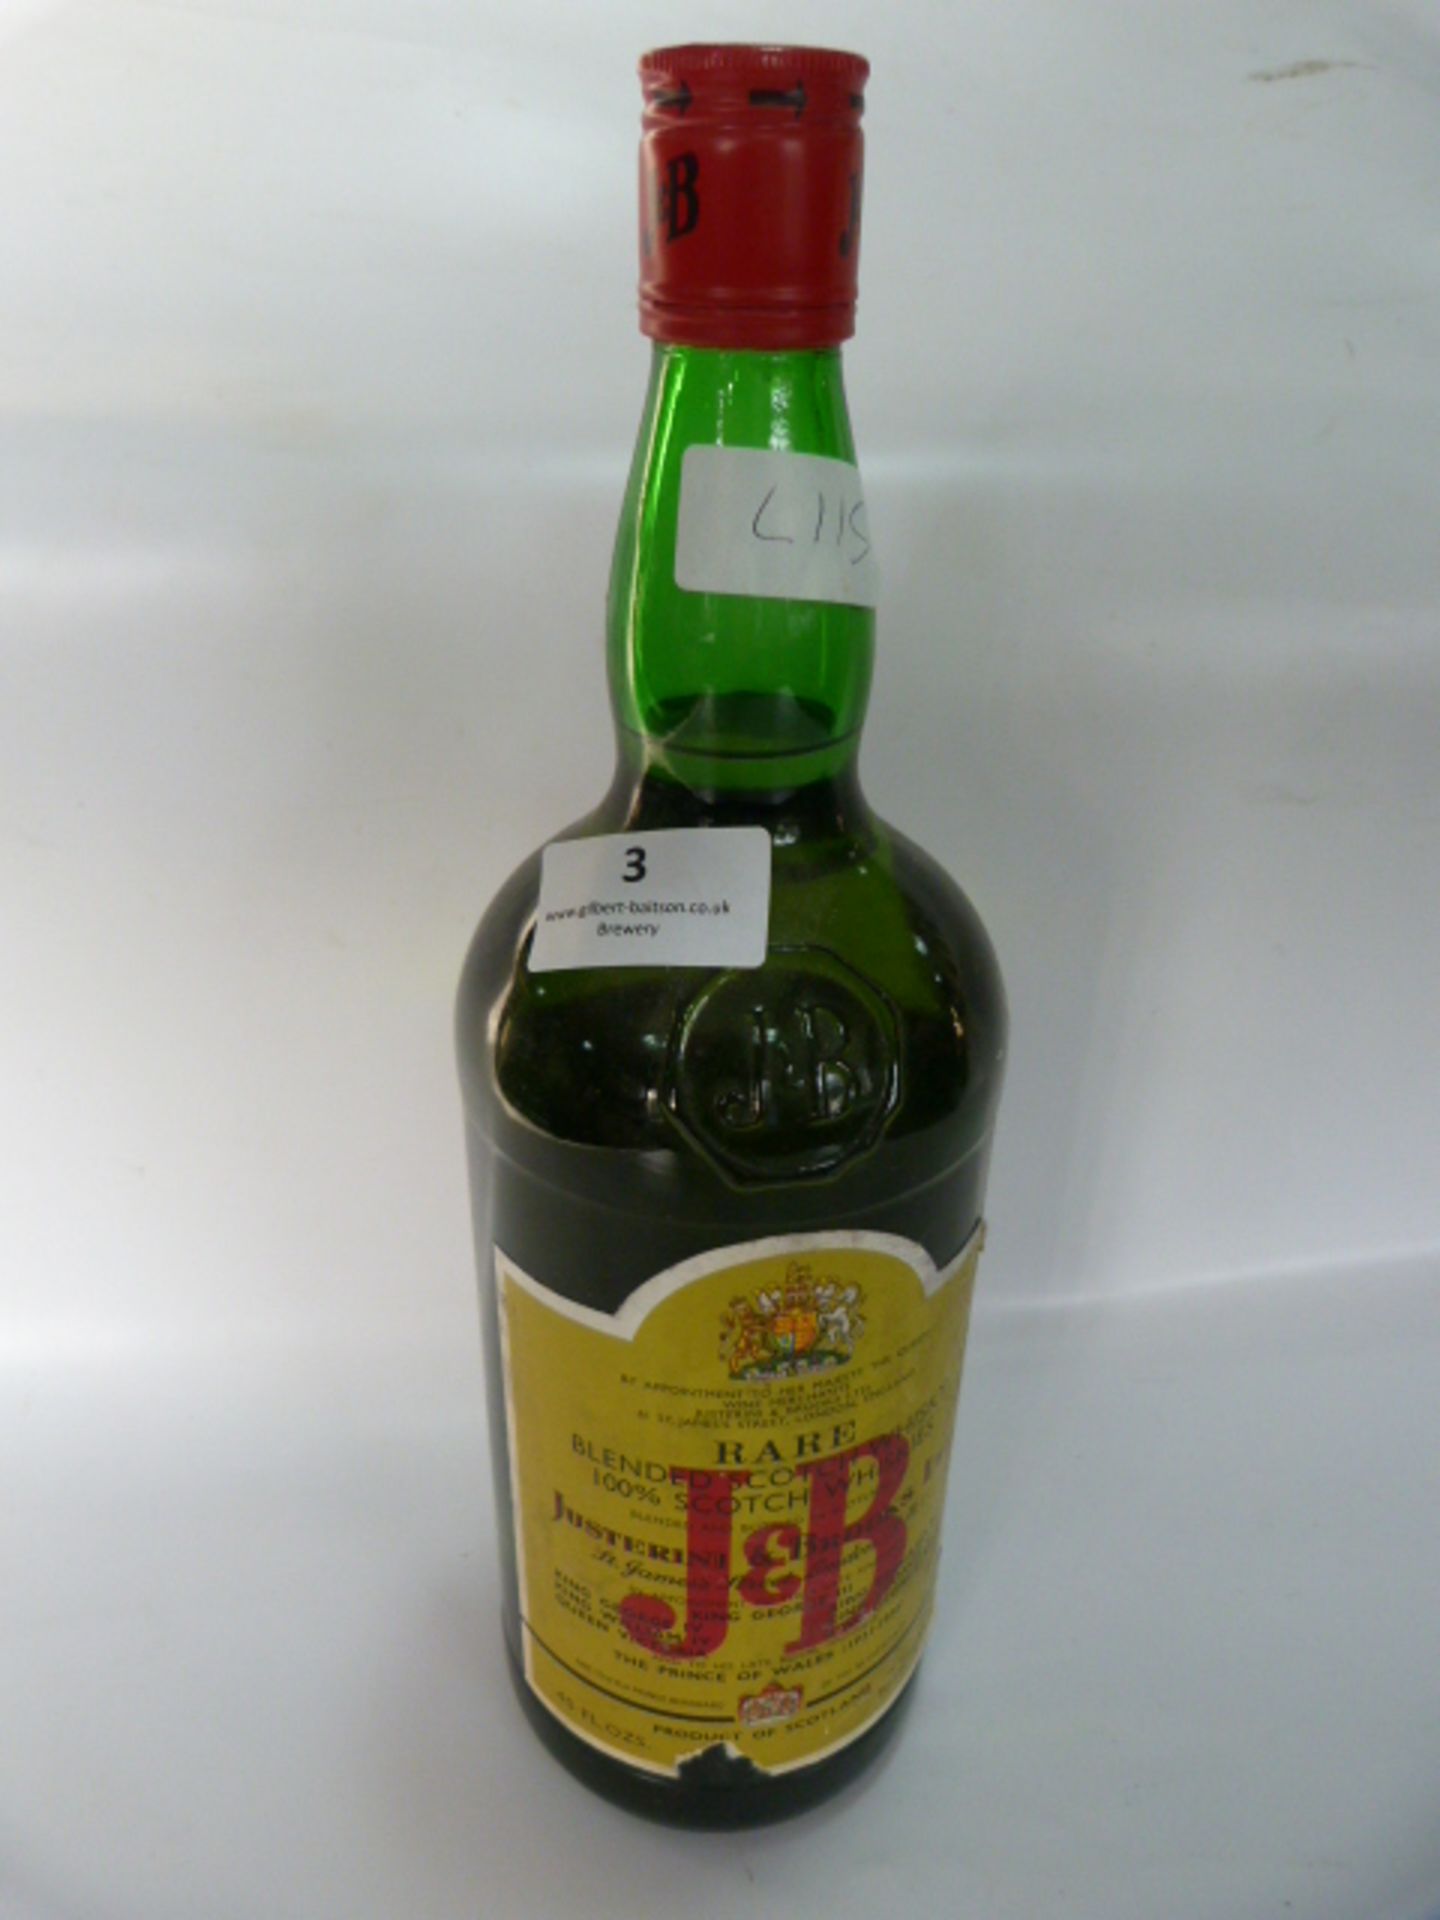 Justerini & Brooks Rare Blended Scotch Whiskey 40 fl oz 1970's